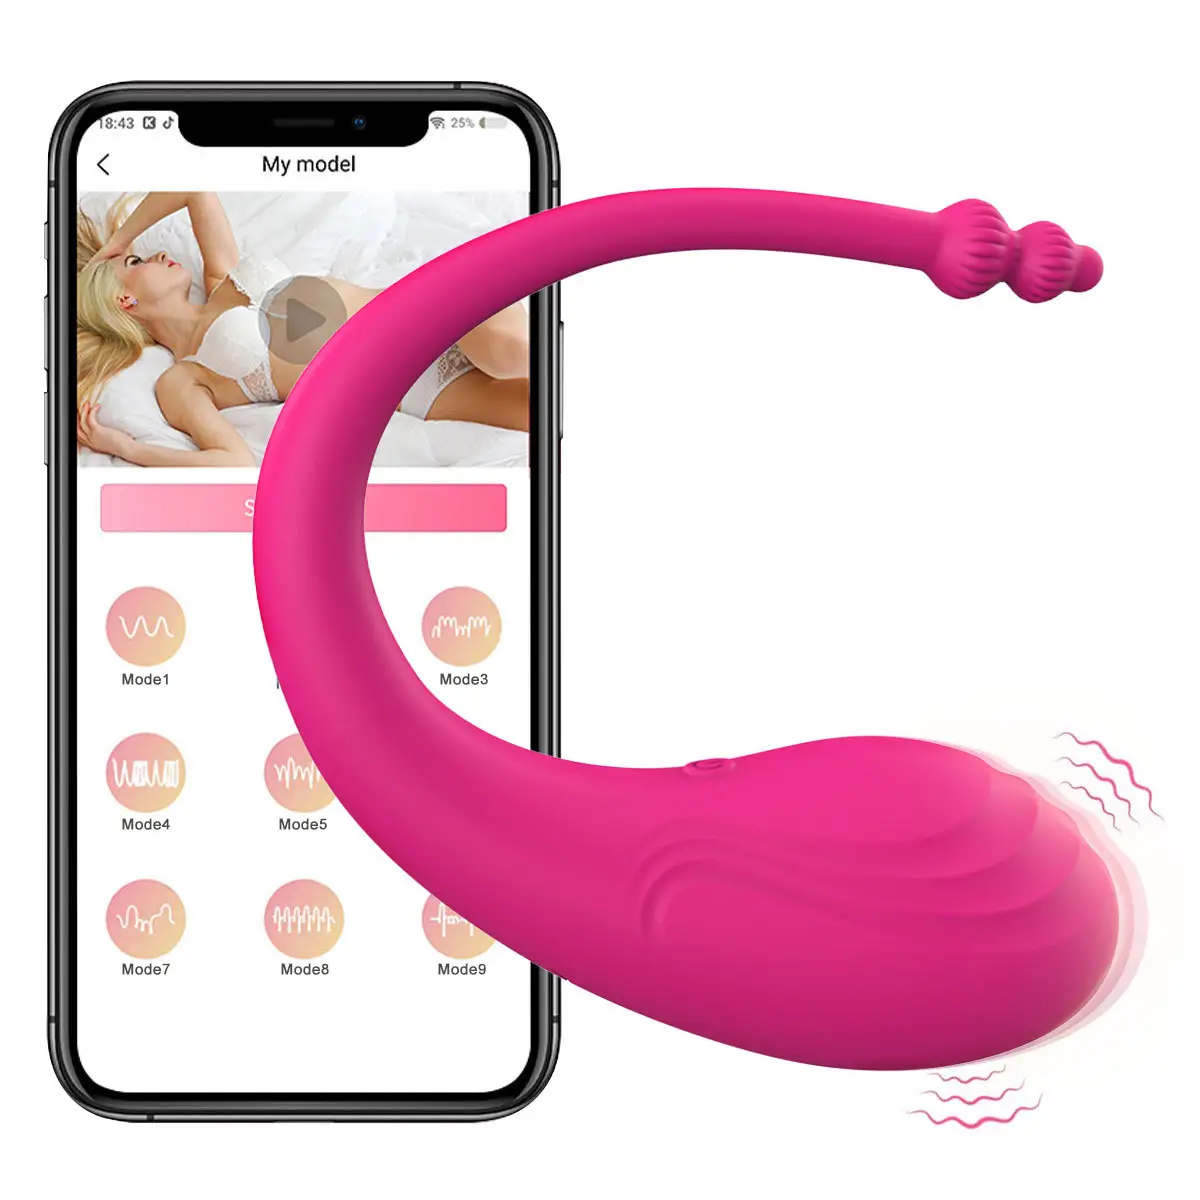 אפליקציה לביש תחתונים ויברטור צעצועי מין אלחוטיים שלט רחוק צעצוע זוג רוטט קפיצה ביצת נרתיק קגל כדור צעצועי מין לאישה